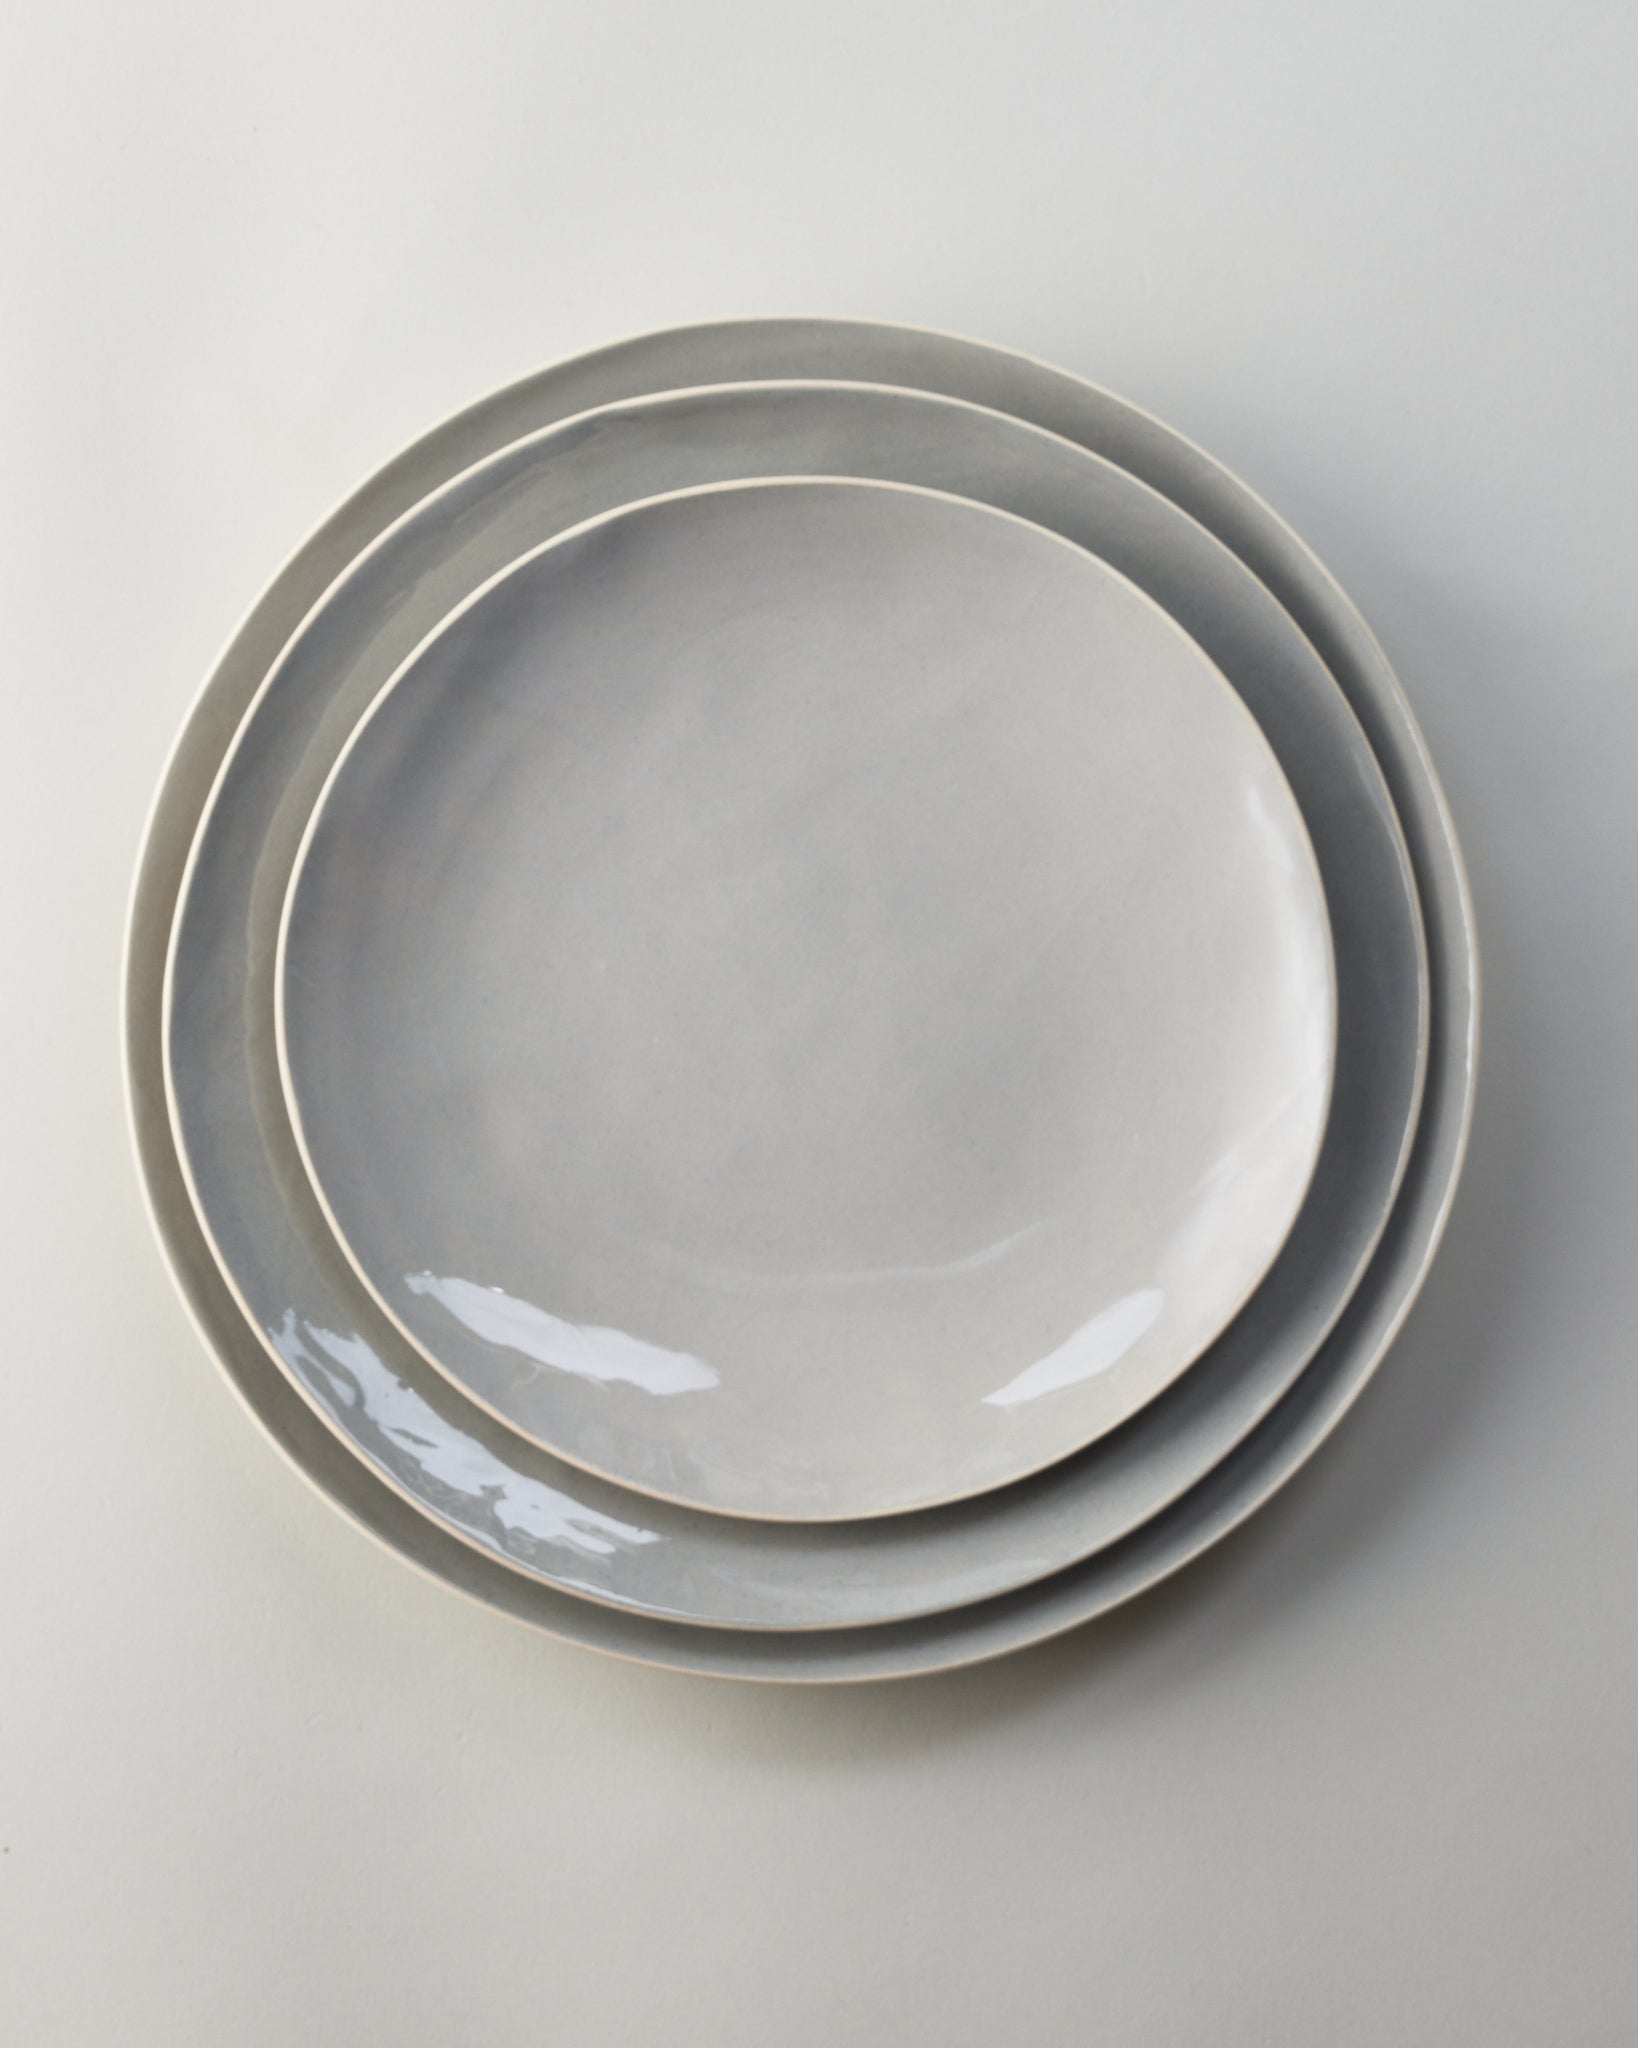 Medium Plate in Pumice